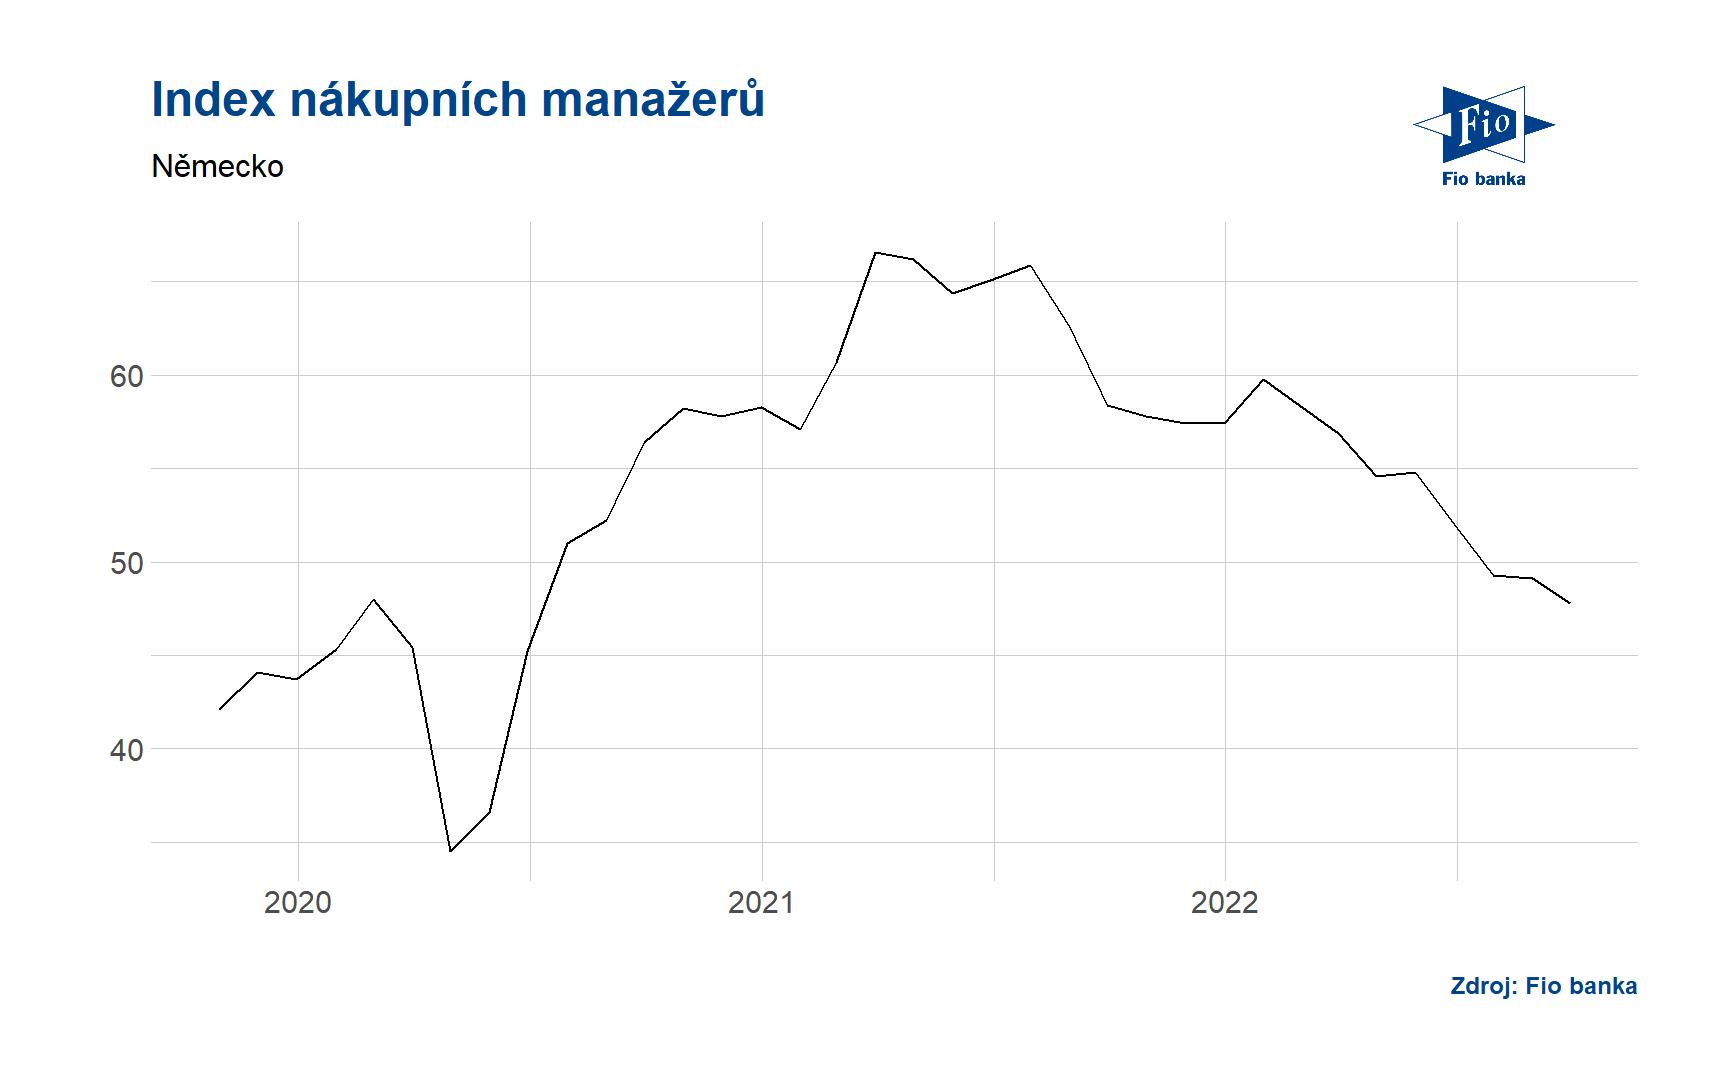 Index nákupních manažerů - Německo